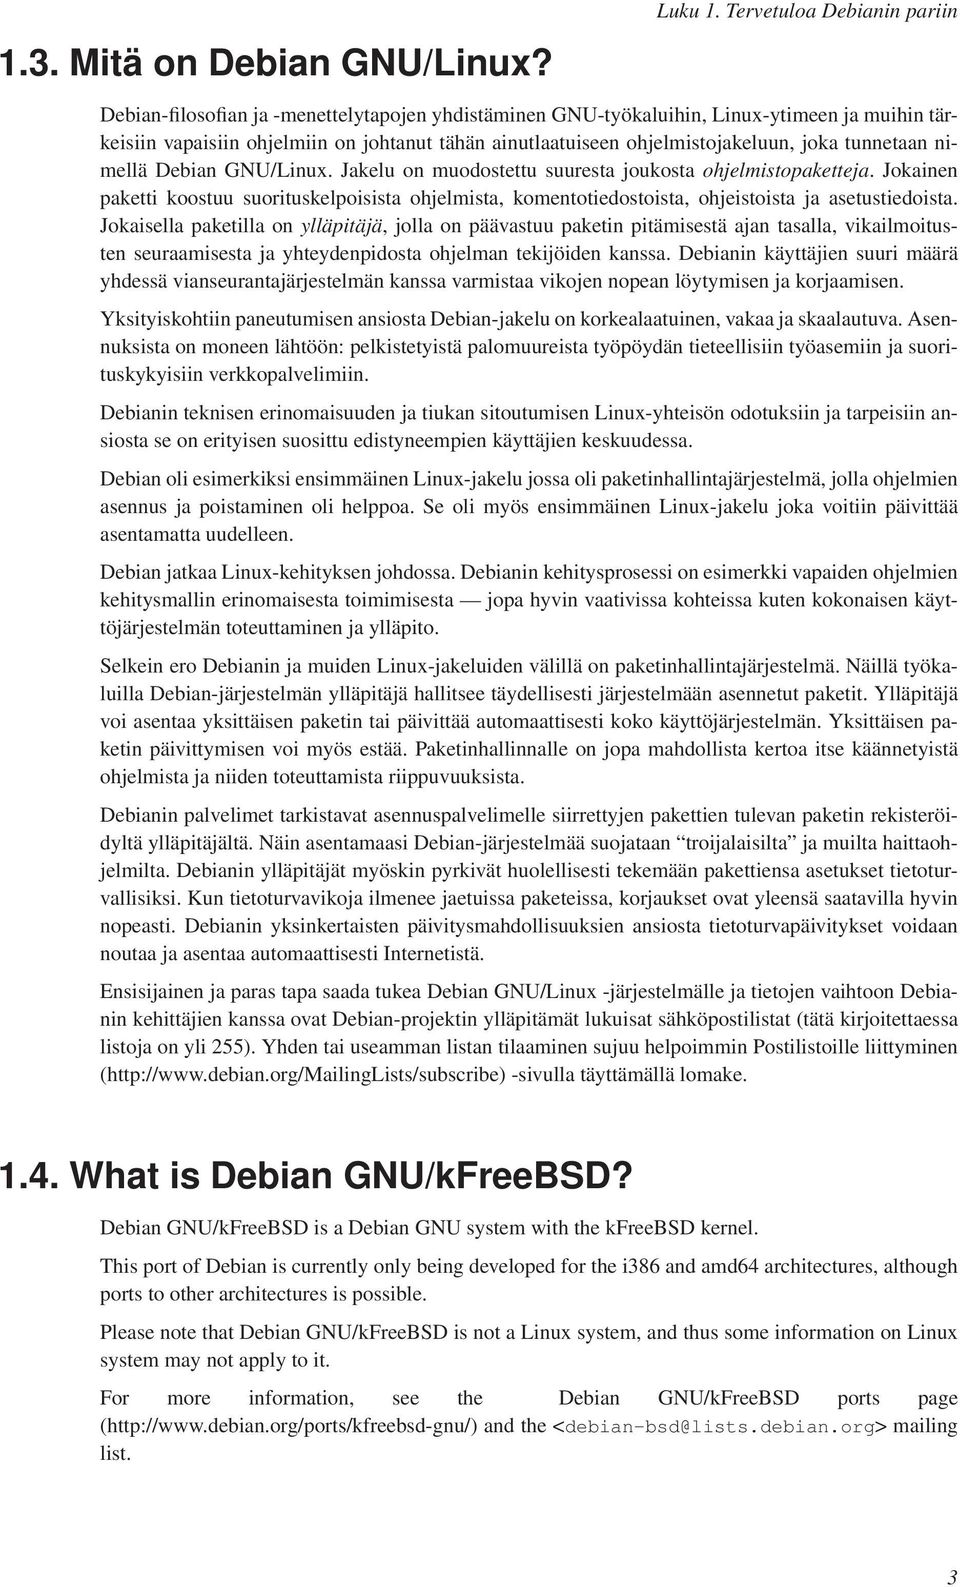 ohjelmistojakeluun, joka tunnetaan nimellä Debian GNU/Linux. Jakelu on muodostettu suuresta joukosta ohjelmistopaketteja.